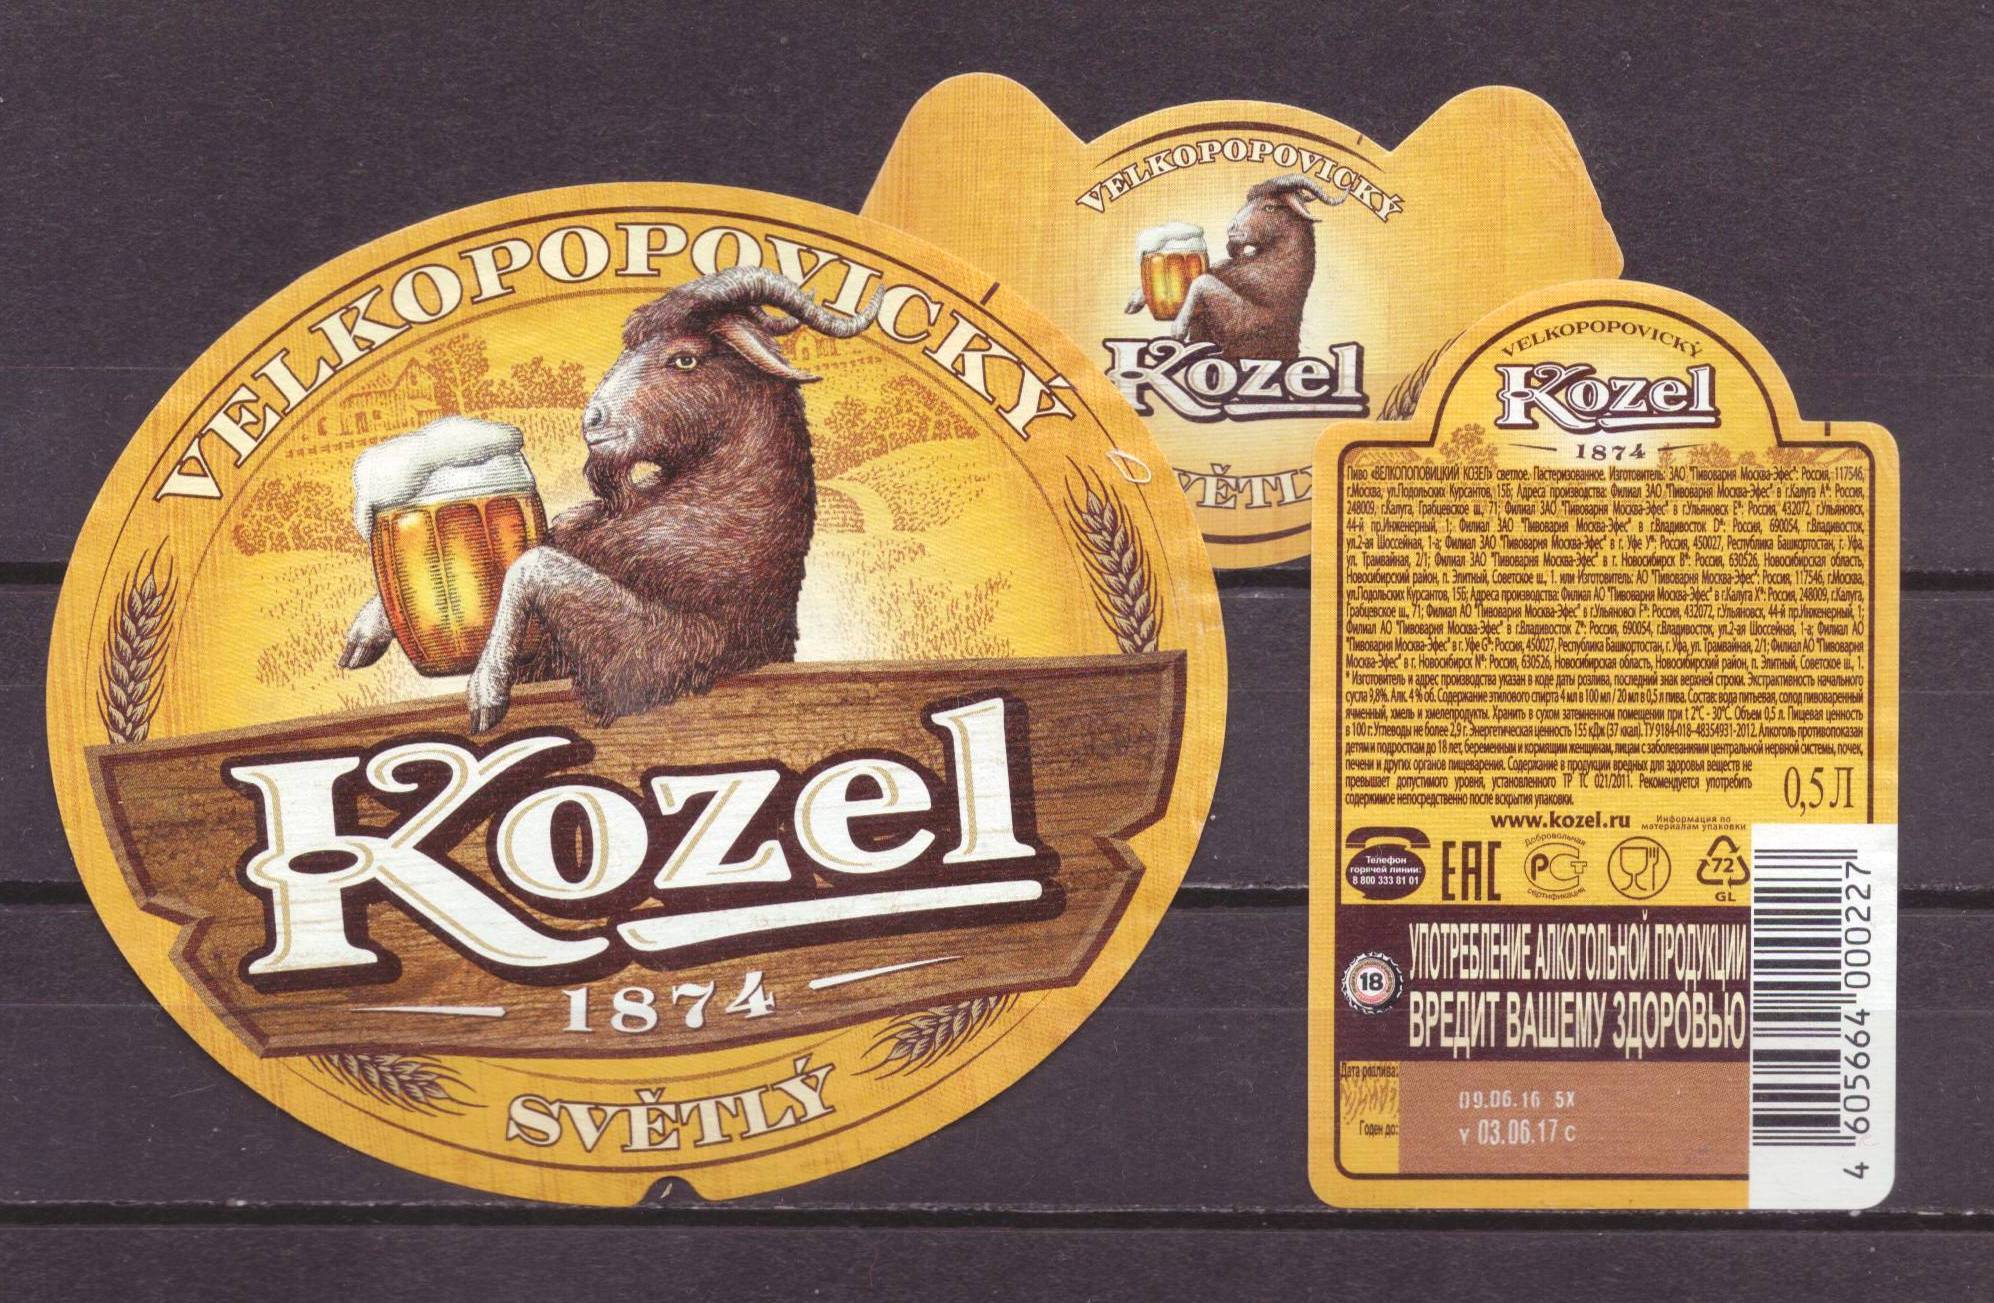 «велкопоповицкий козел»: история, производитель и отзывы о чешском пиве